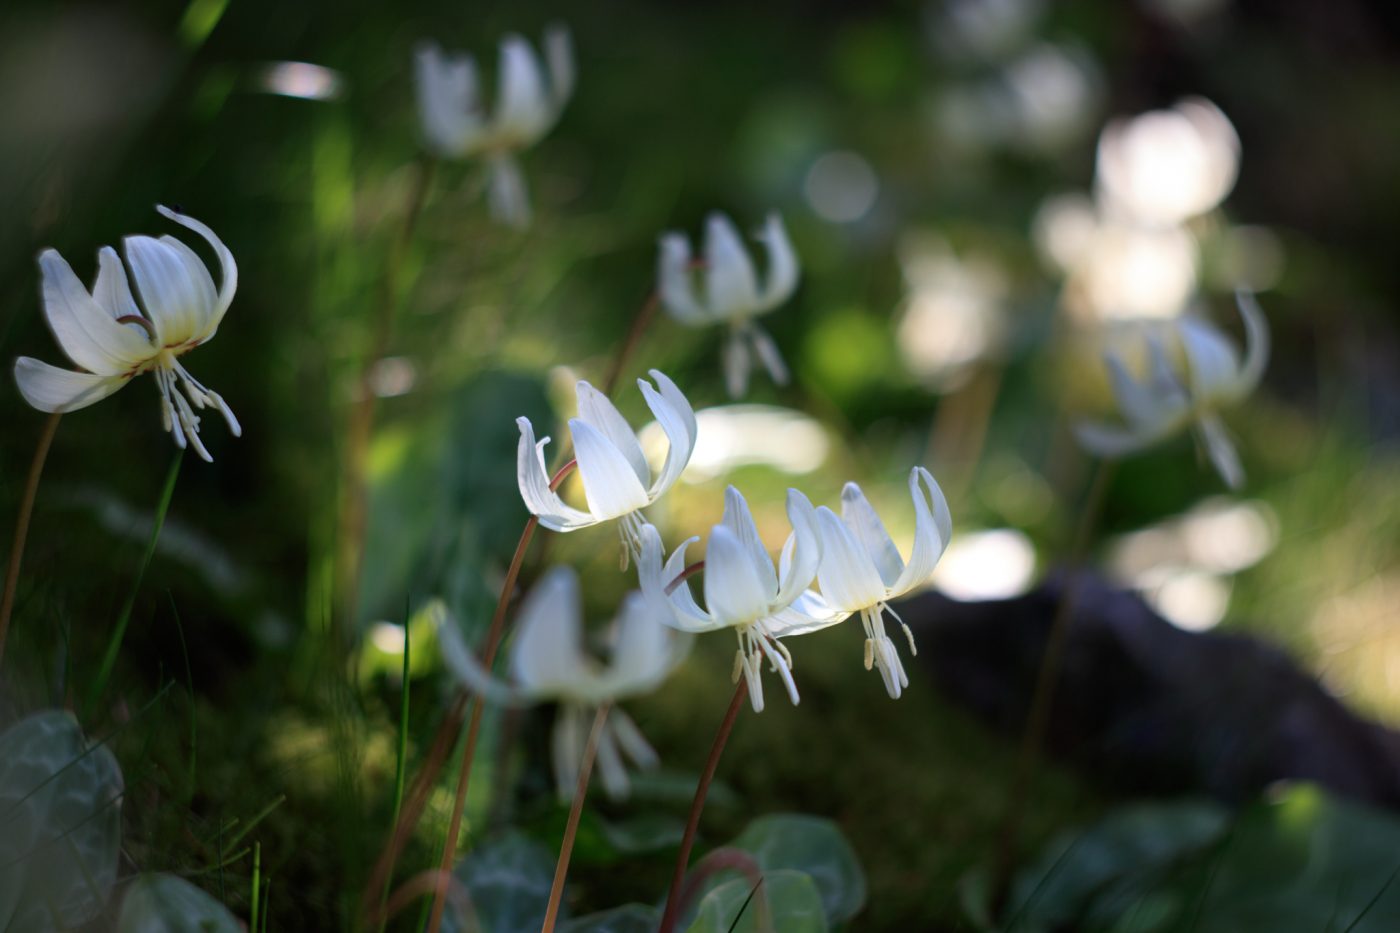 Erythronium revolutum "White Beauty" ist eine zarte Schönheit im Garten.